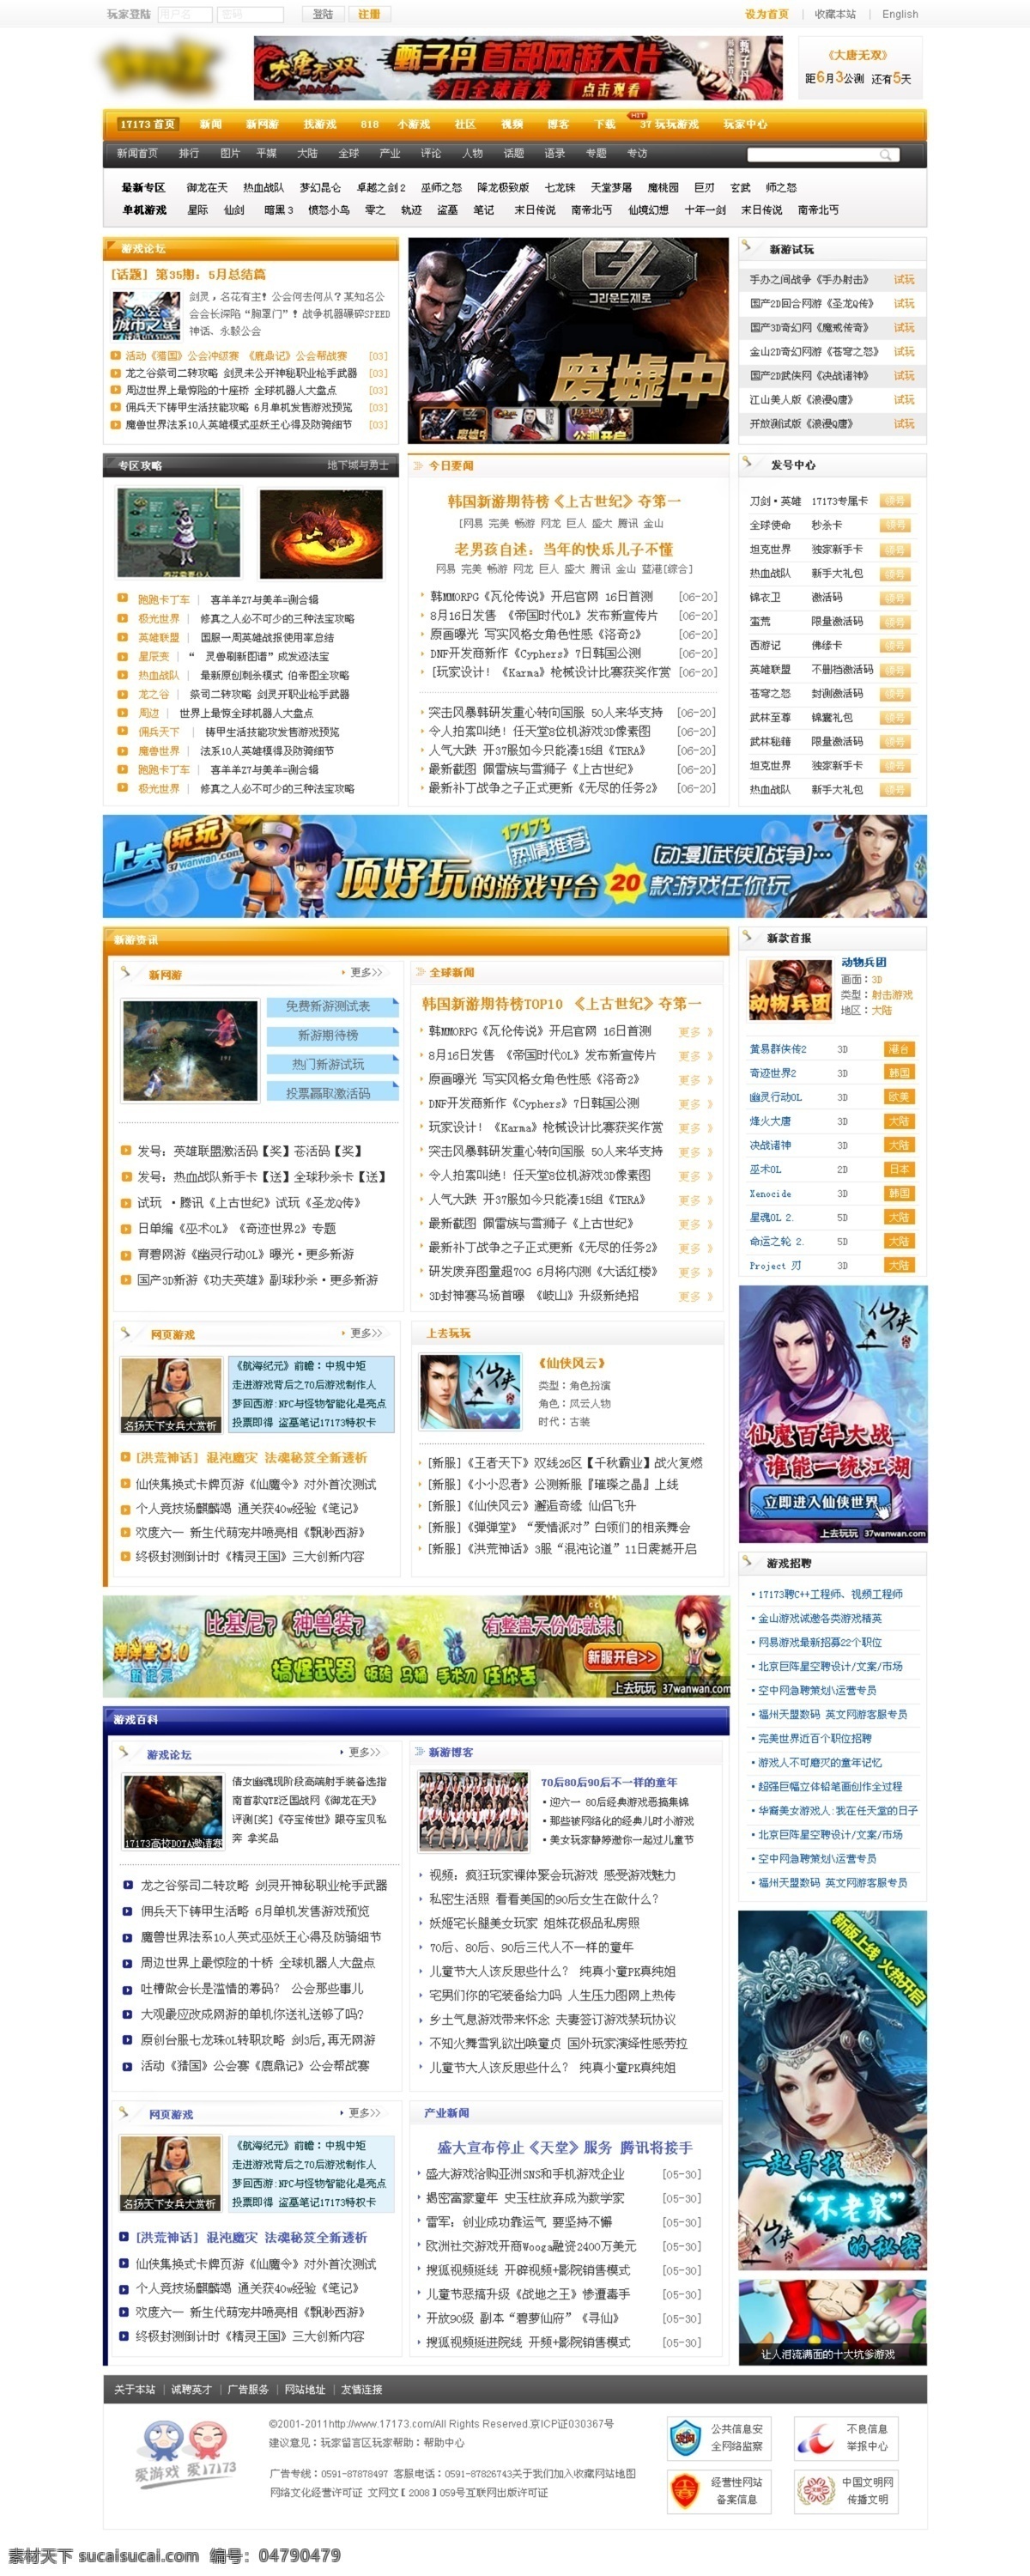 网页模板 游戏网页 游戏网站 源文件 中文模板 游戏网 模板下载 中文网页 网页素材